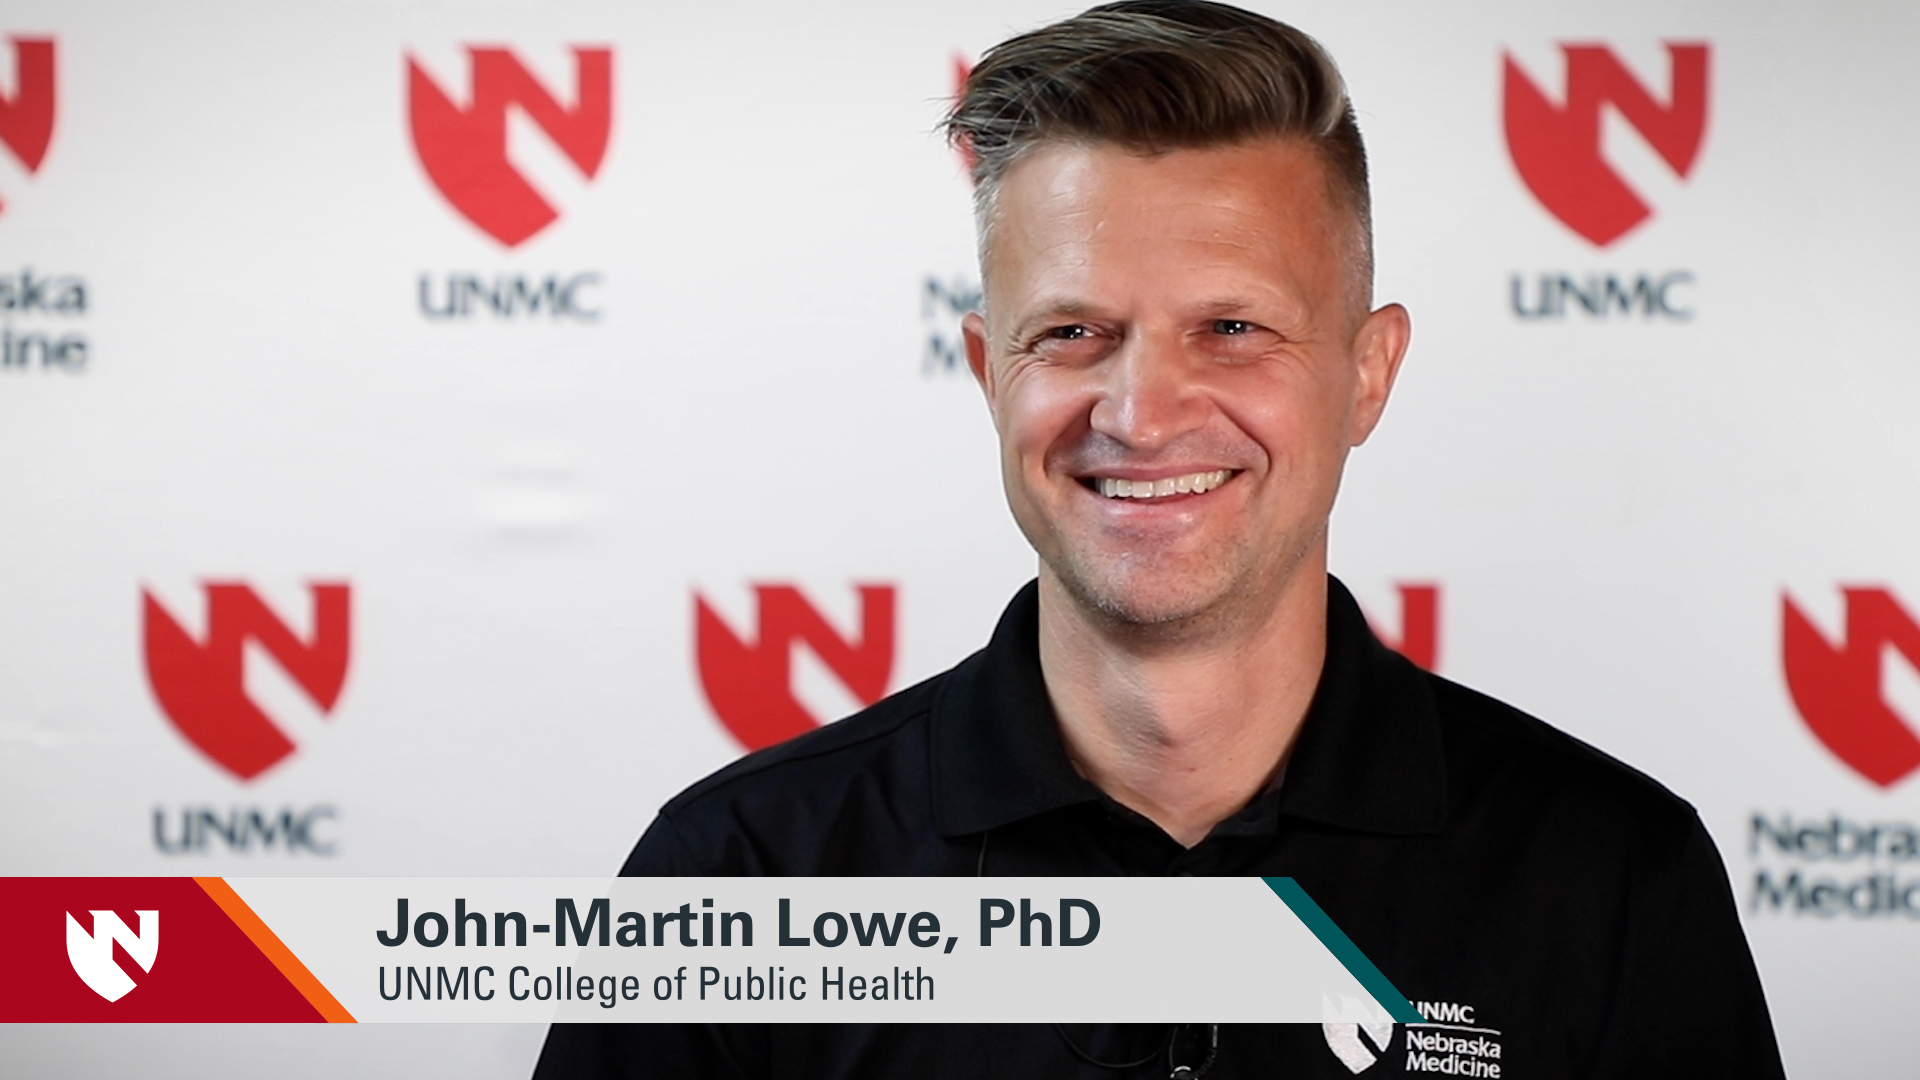 ASK UNMC! John-Martin Lowe, PhD, UNMC College of Public Health